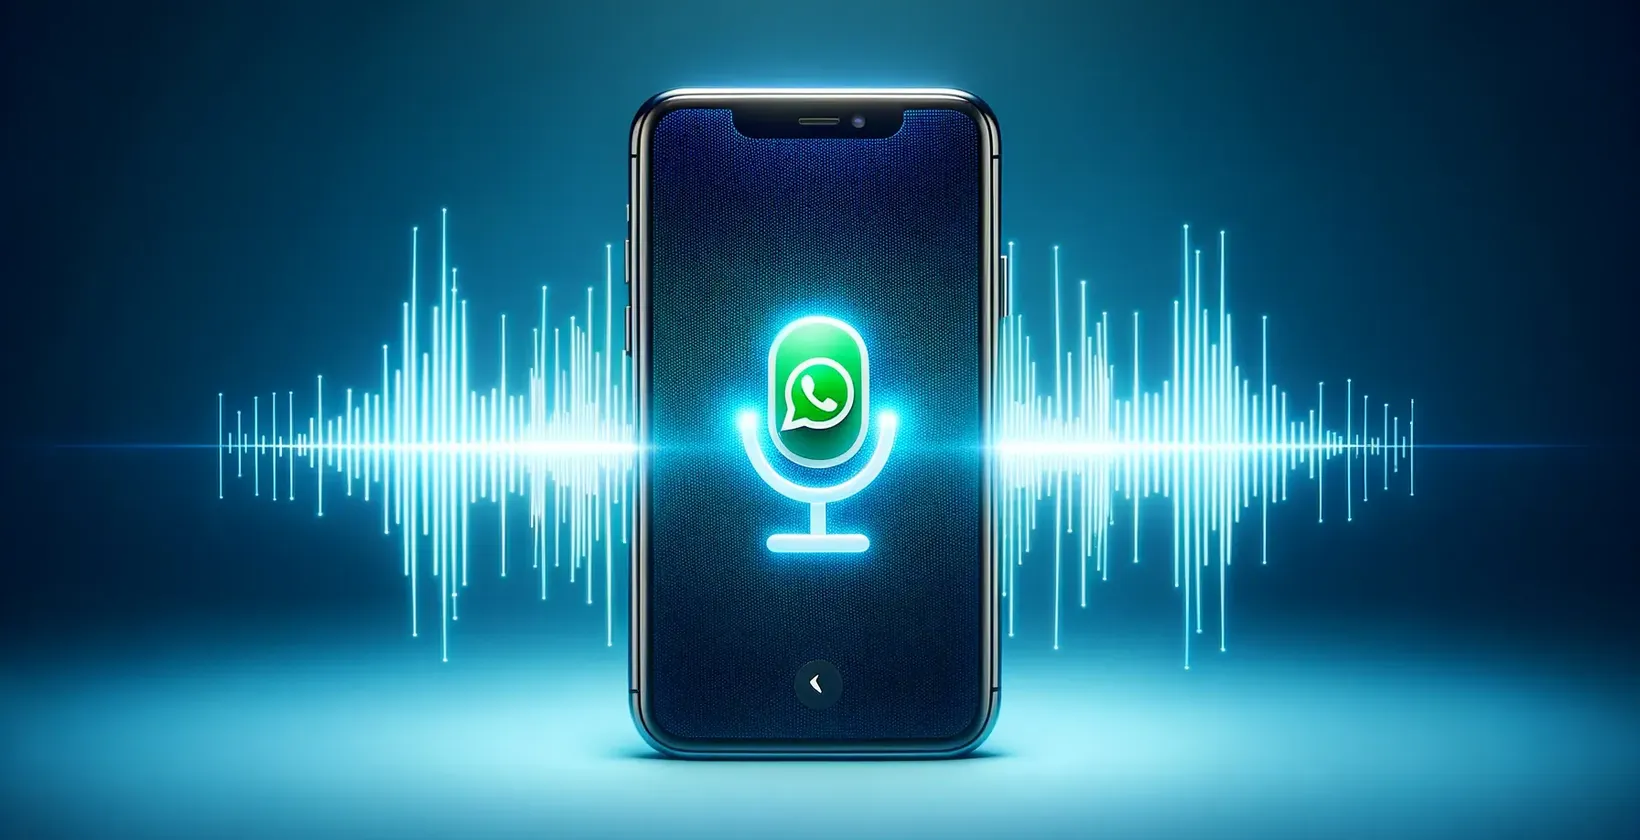 Зображення, що представляє концепцію голосового дзвінка WhatsApp з функцією диктування